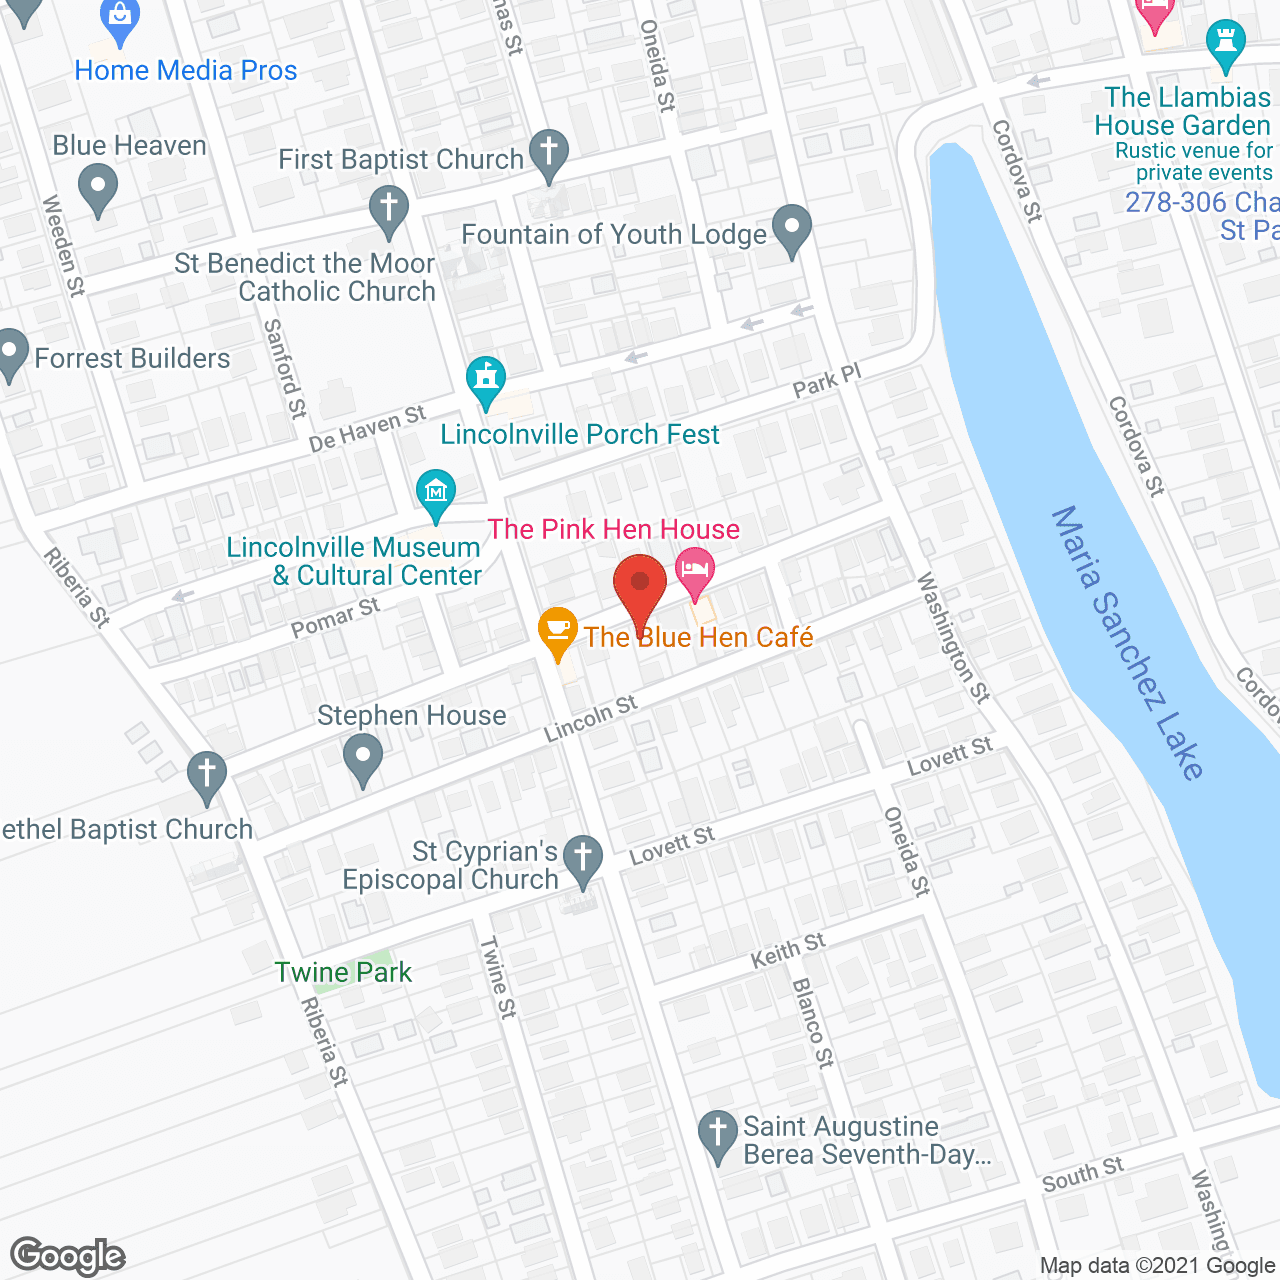 Allegro St. Augustine in google map